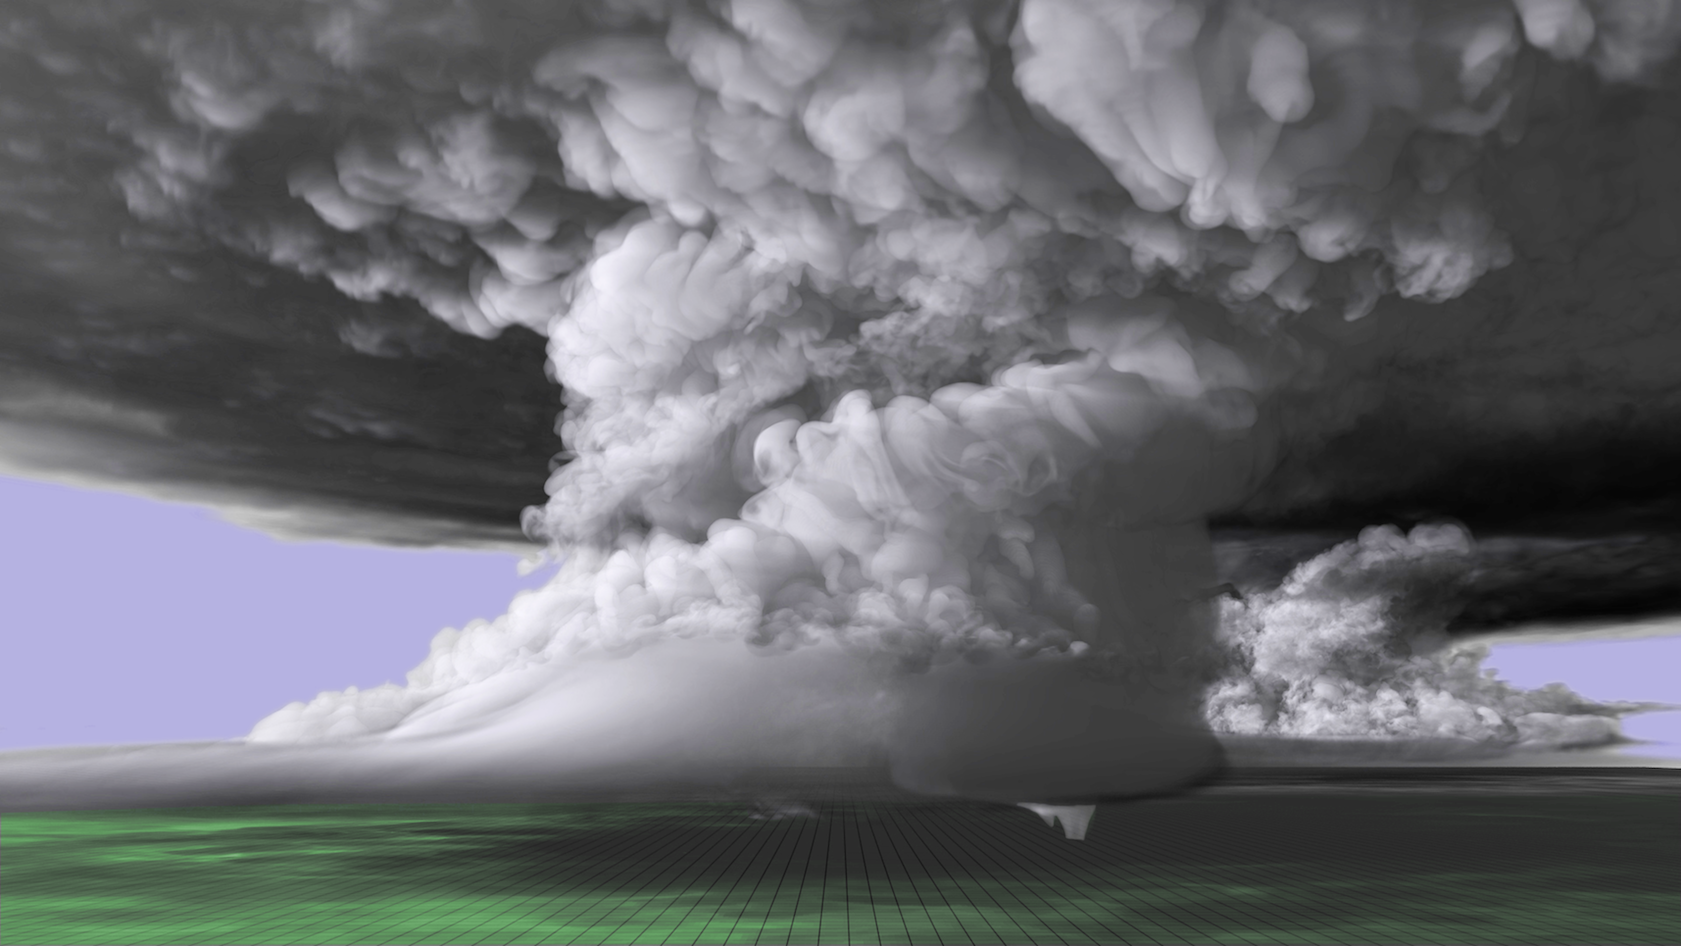 Simulation recreates supercell that birthed El Reno tornado • Earth.com